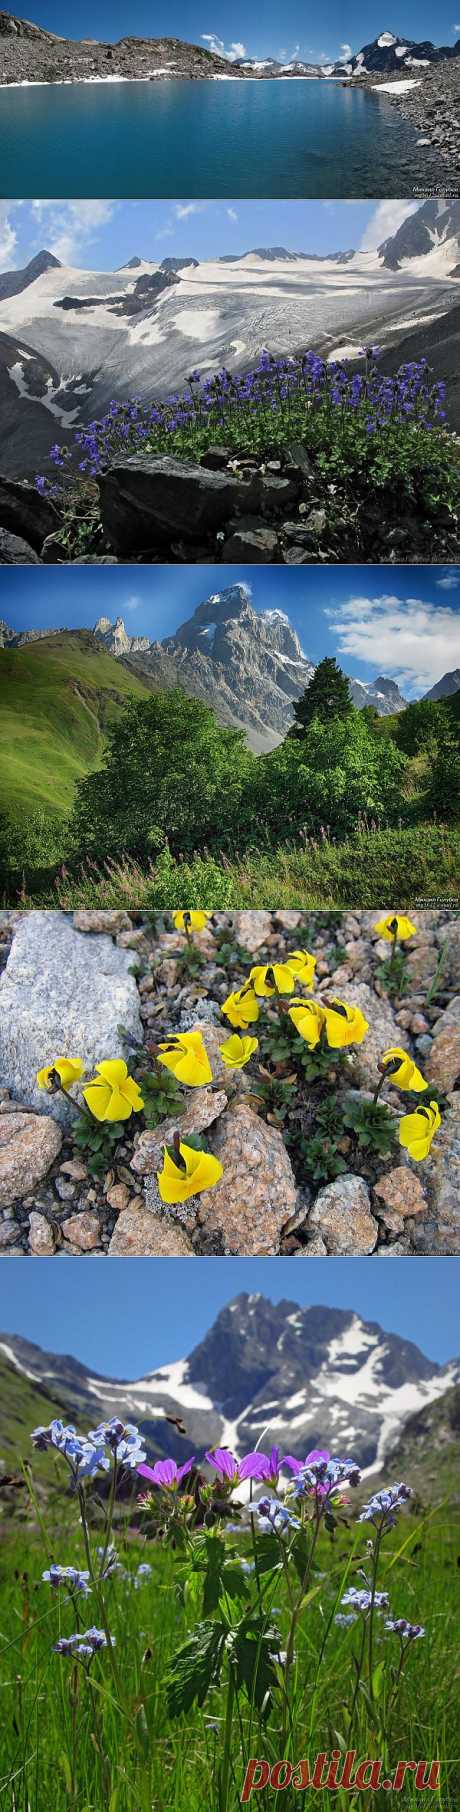 Цветы на горных вершинах Кавказских гор!